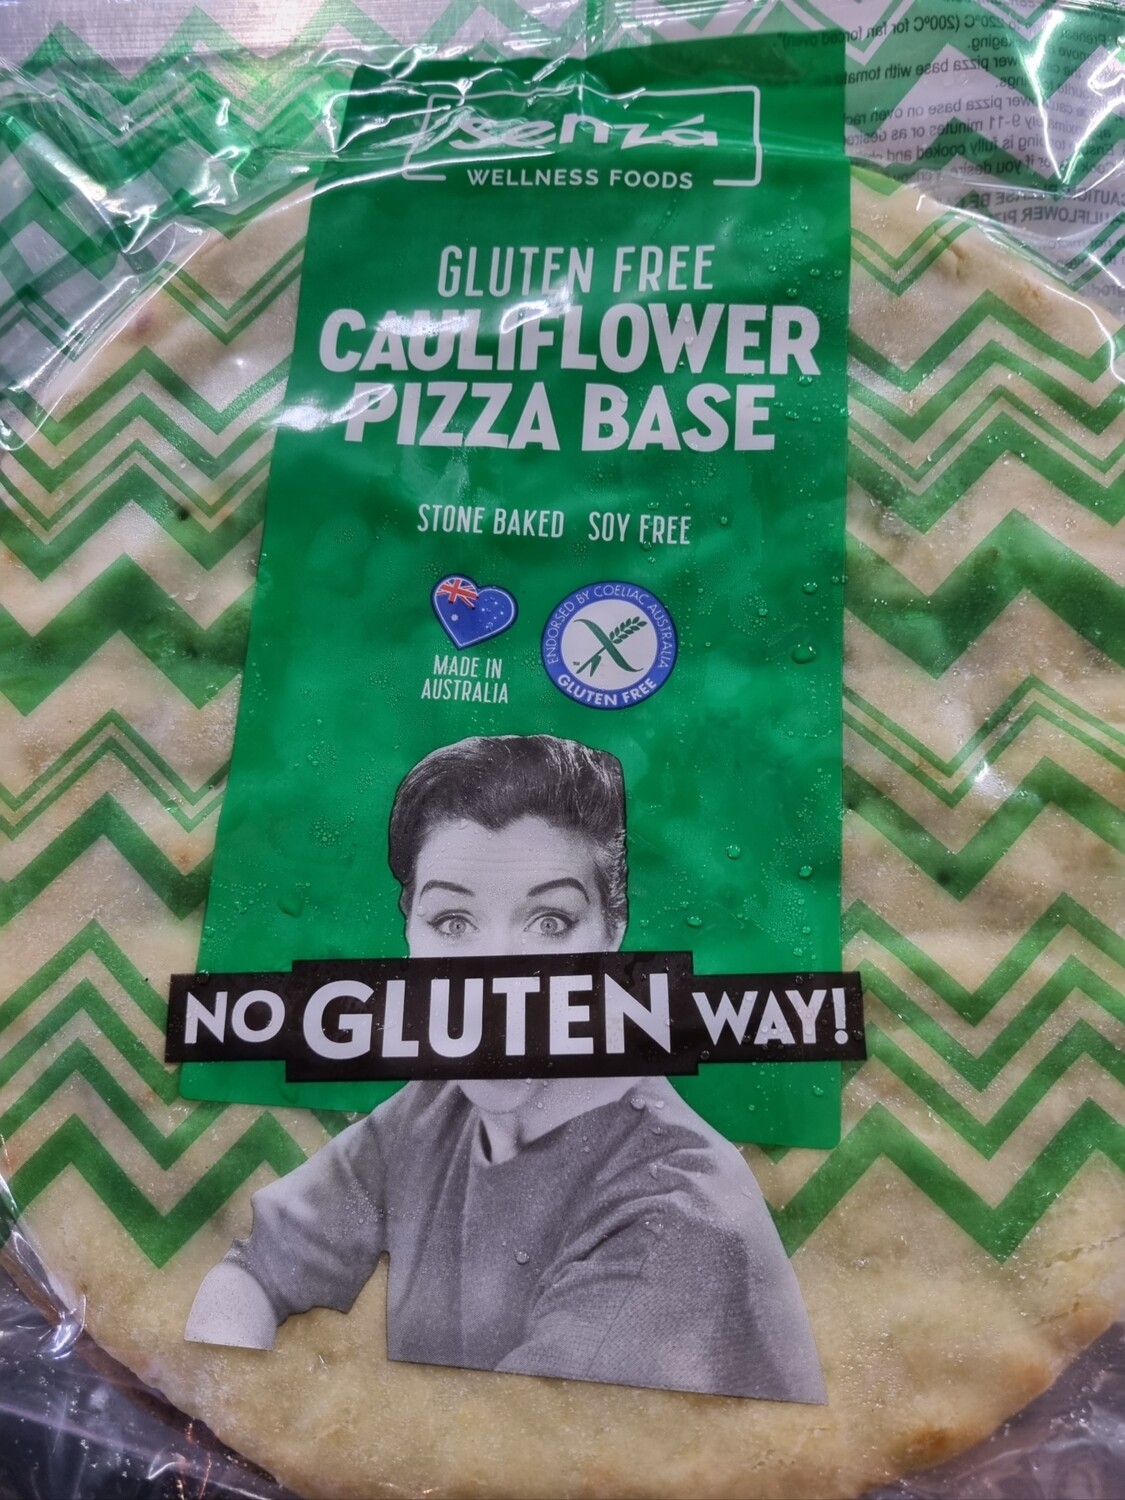 Glutenfree CAULIFLOWER pizza bases